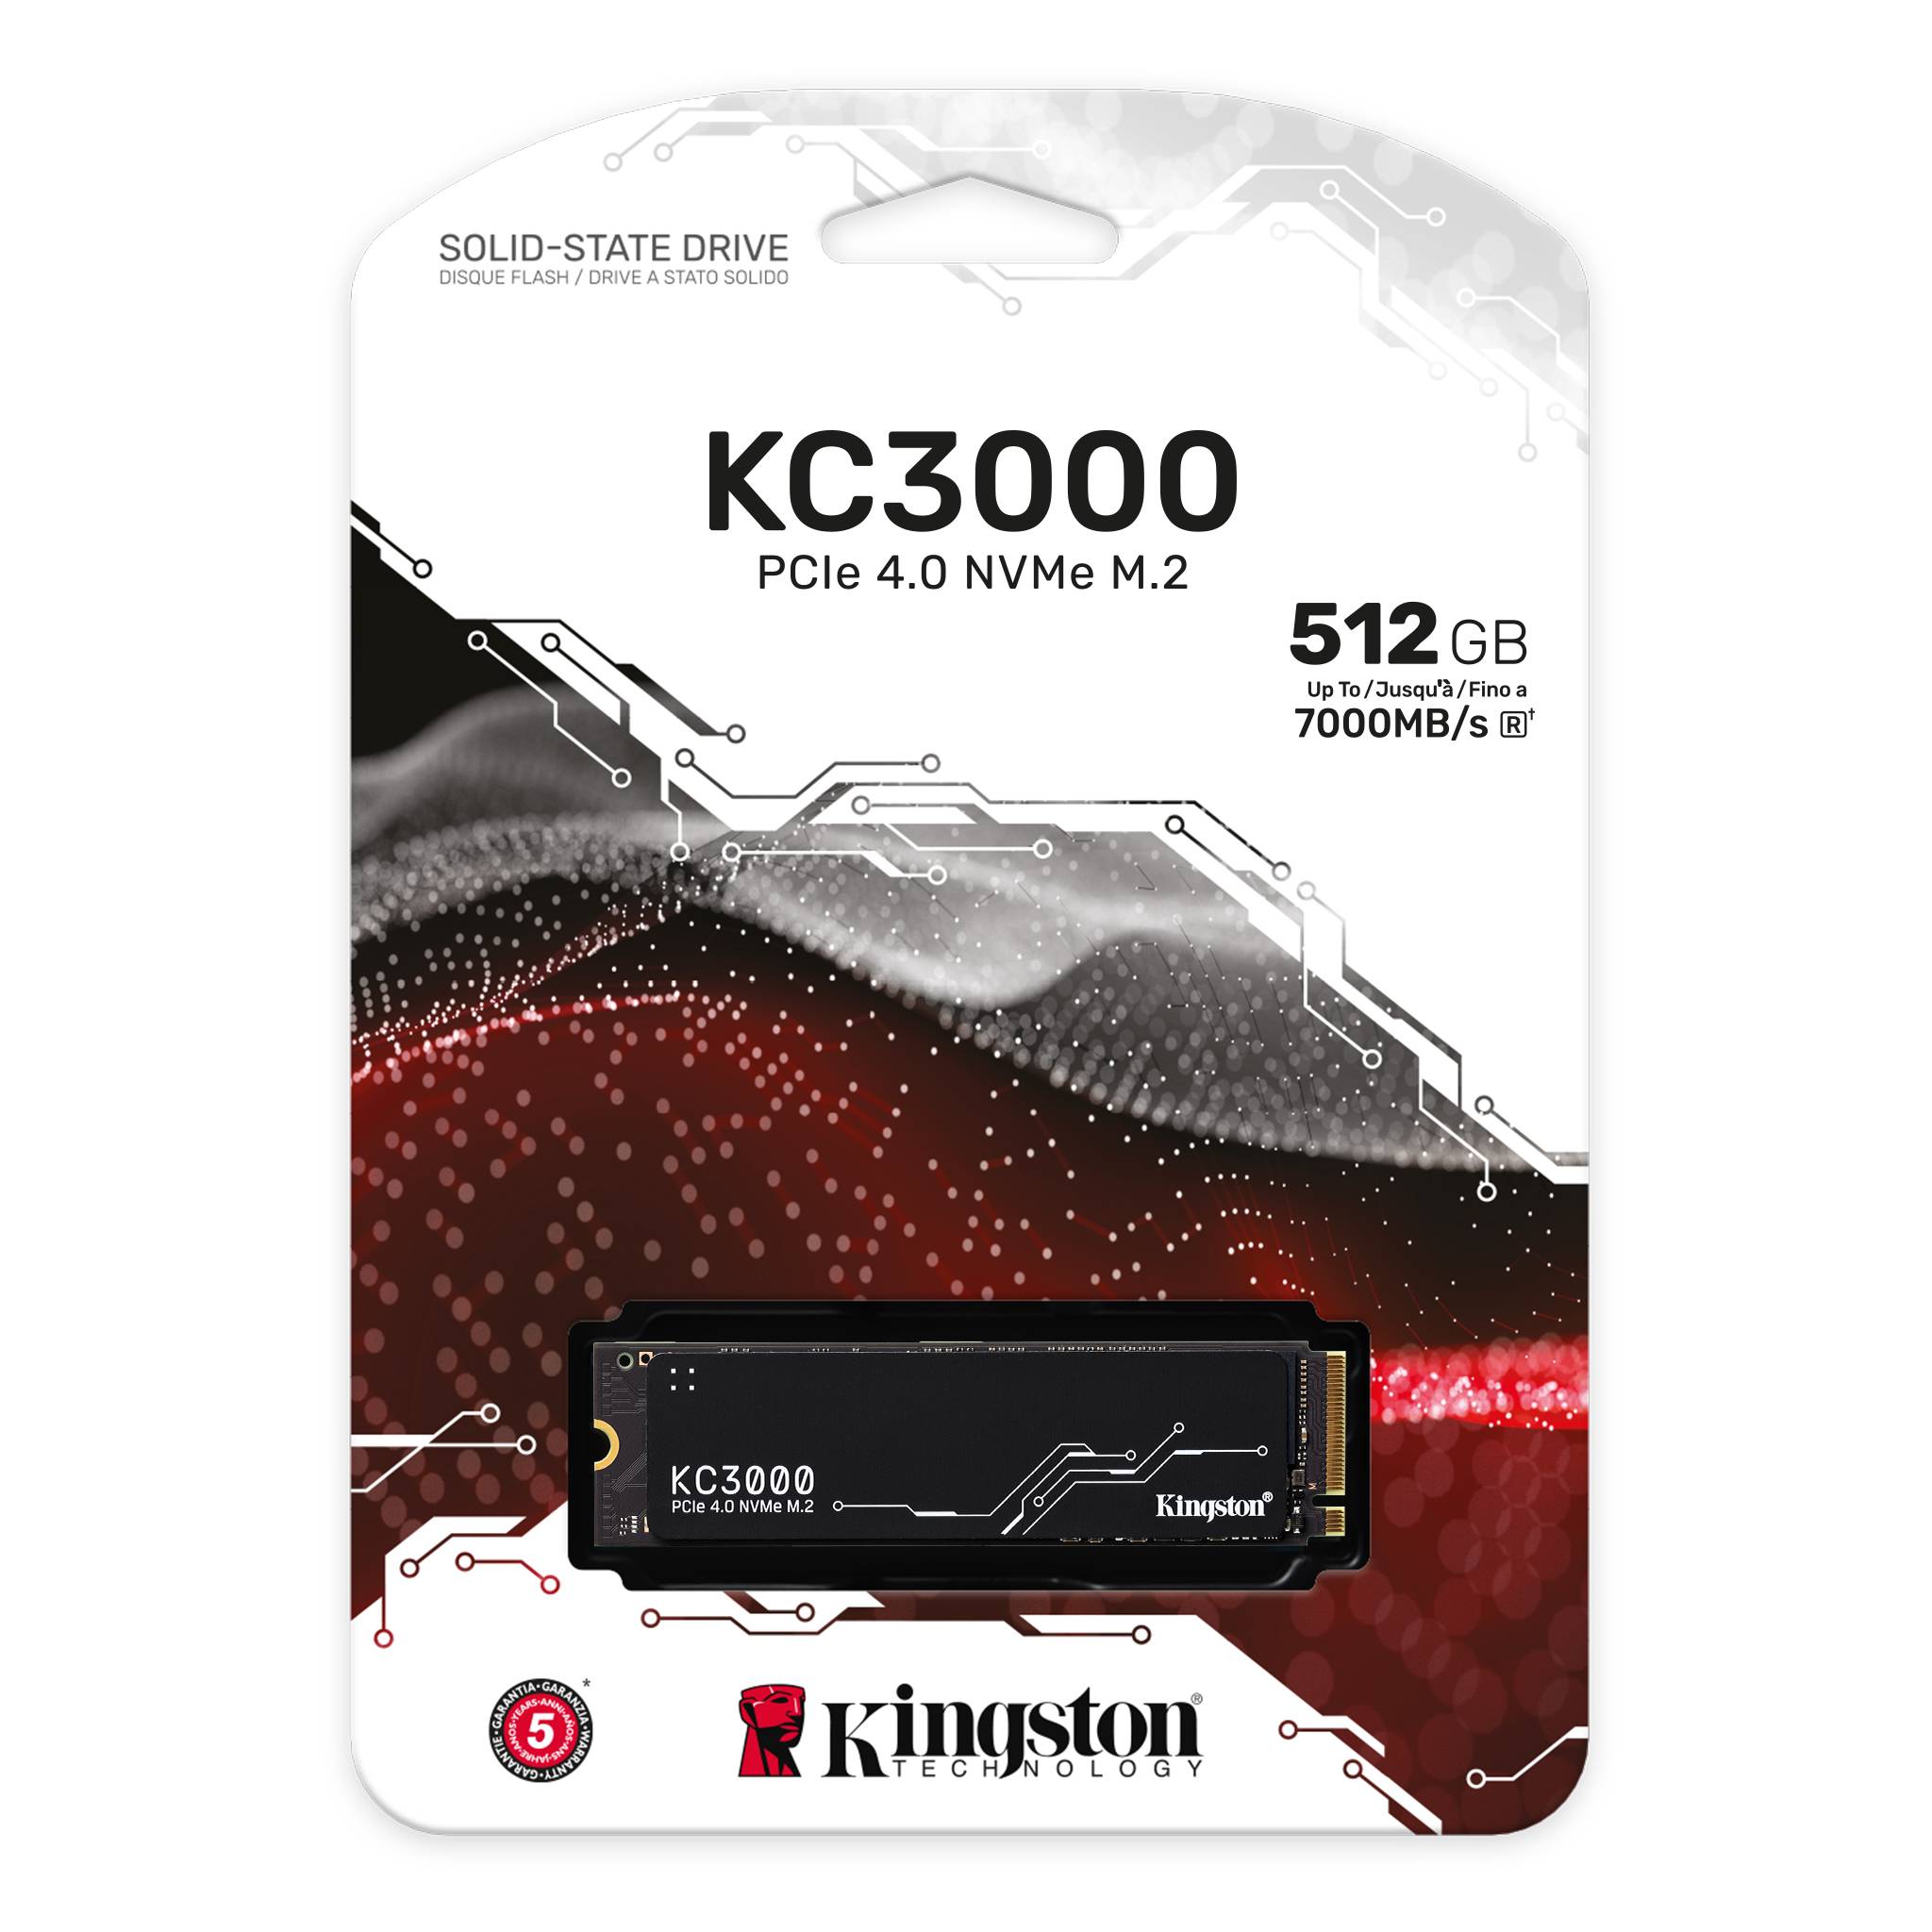 KC3000 PCIe 4.0 NVMe M.2 SSD High-performance desktop and laptop PCs - Kingston Technology